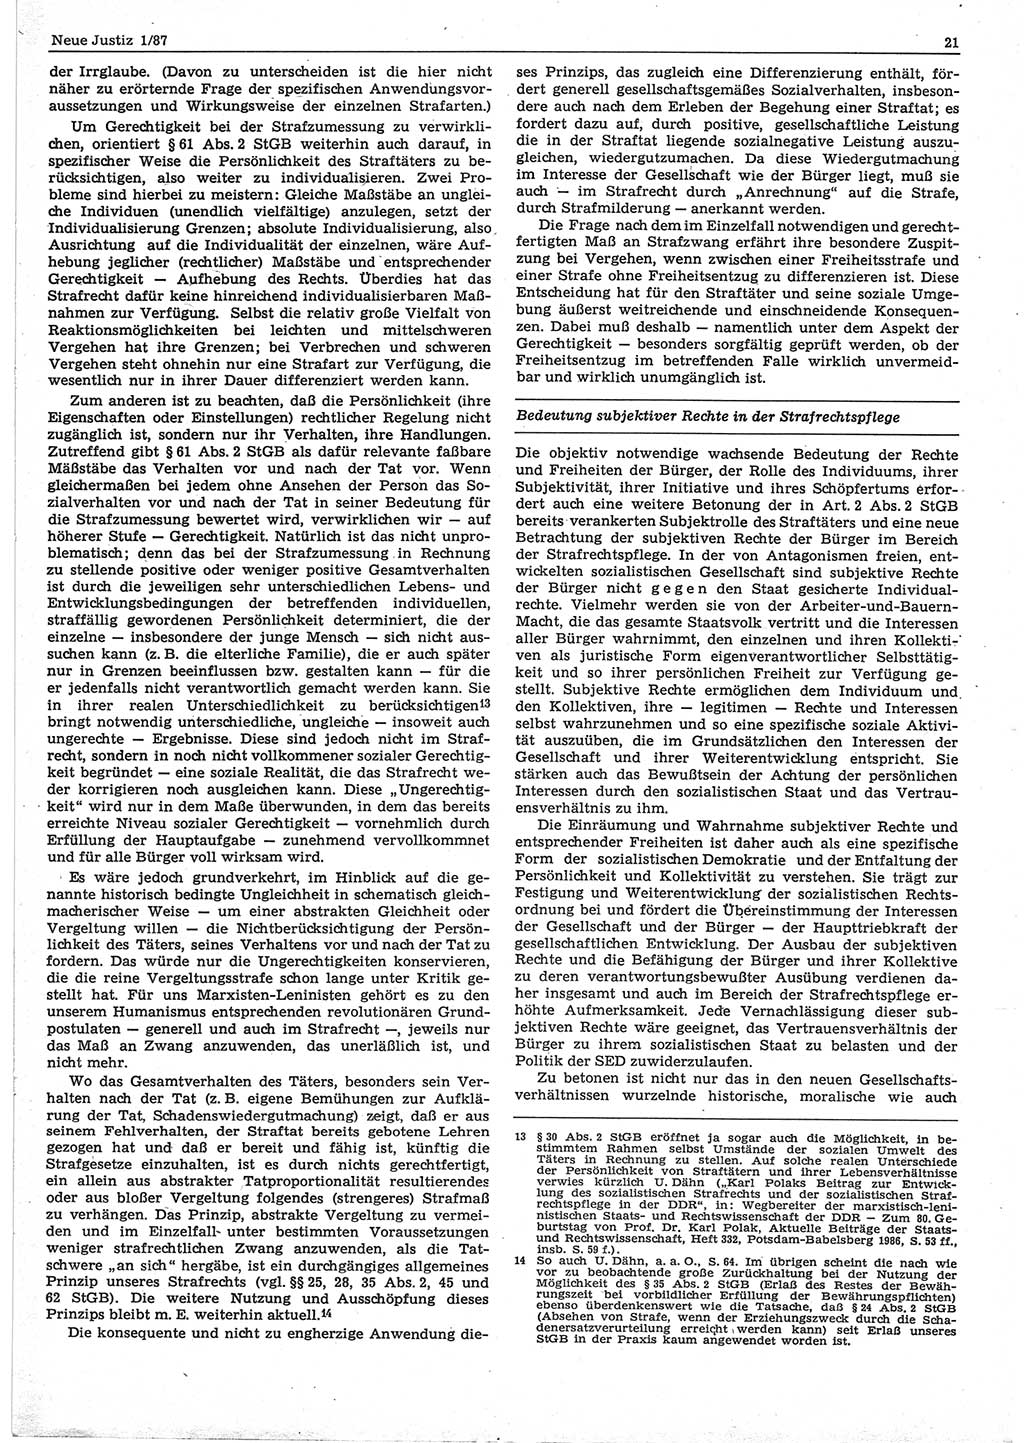 Neue Justiz (NJ), Zeitschrift für sozialistisches Recht und Gesetzlichkeit [Deutsche Demokratische Republik (DDR)], 41. Jahrgang 1987, Seite 21 (NJ DDR 1987, S. 21)